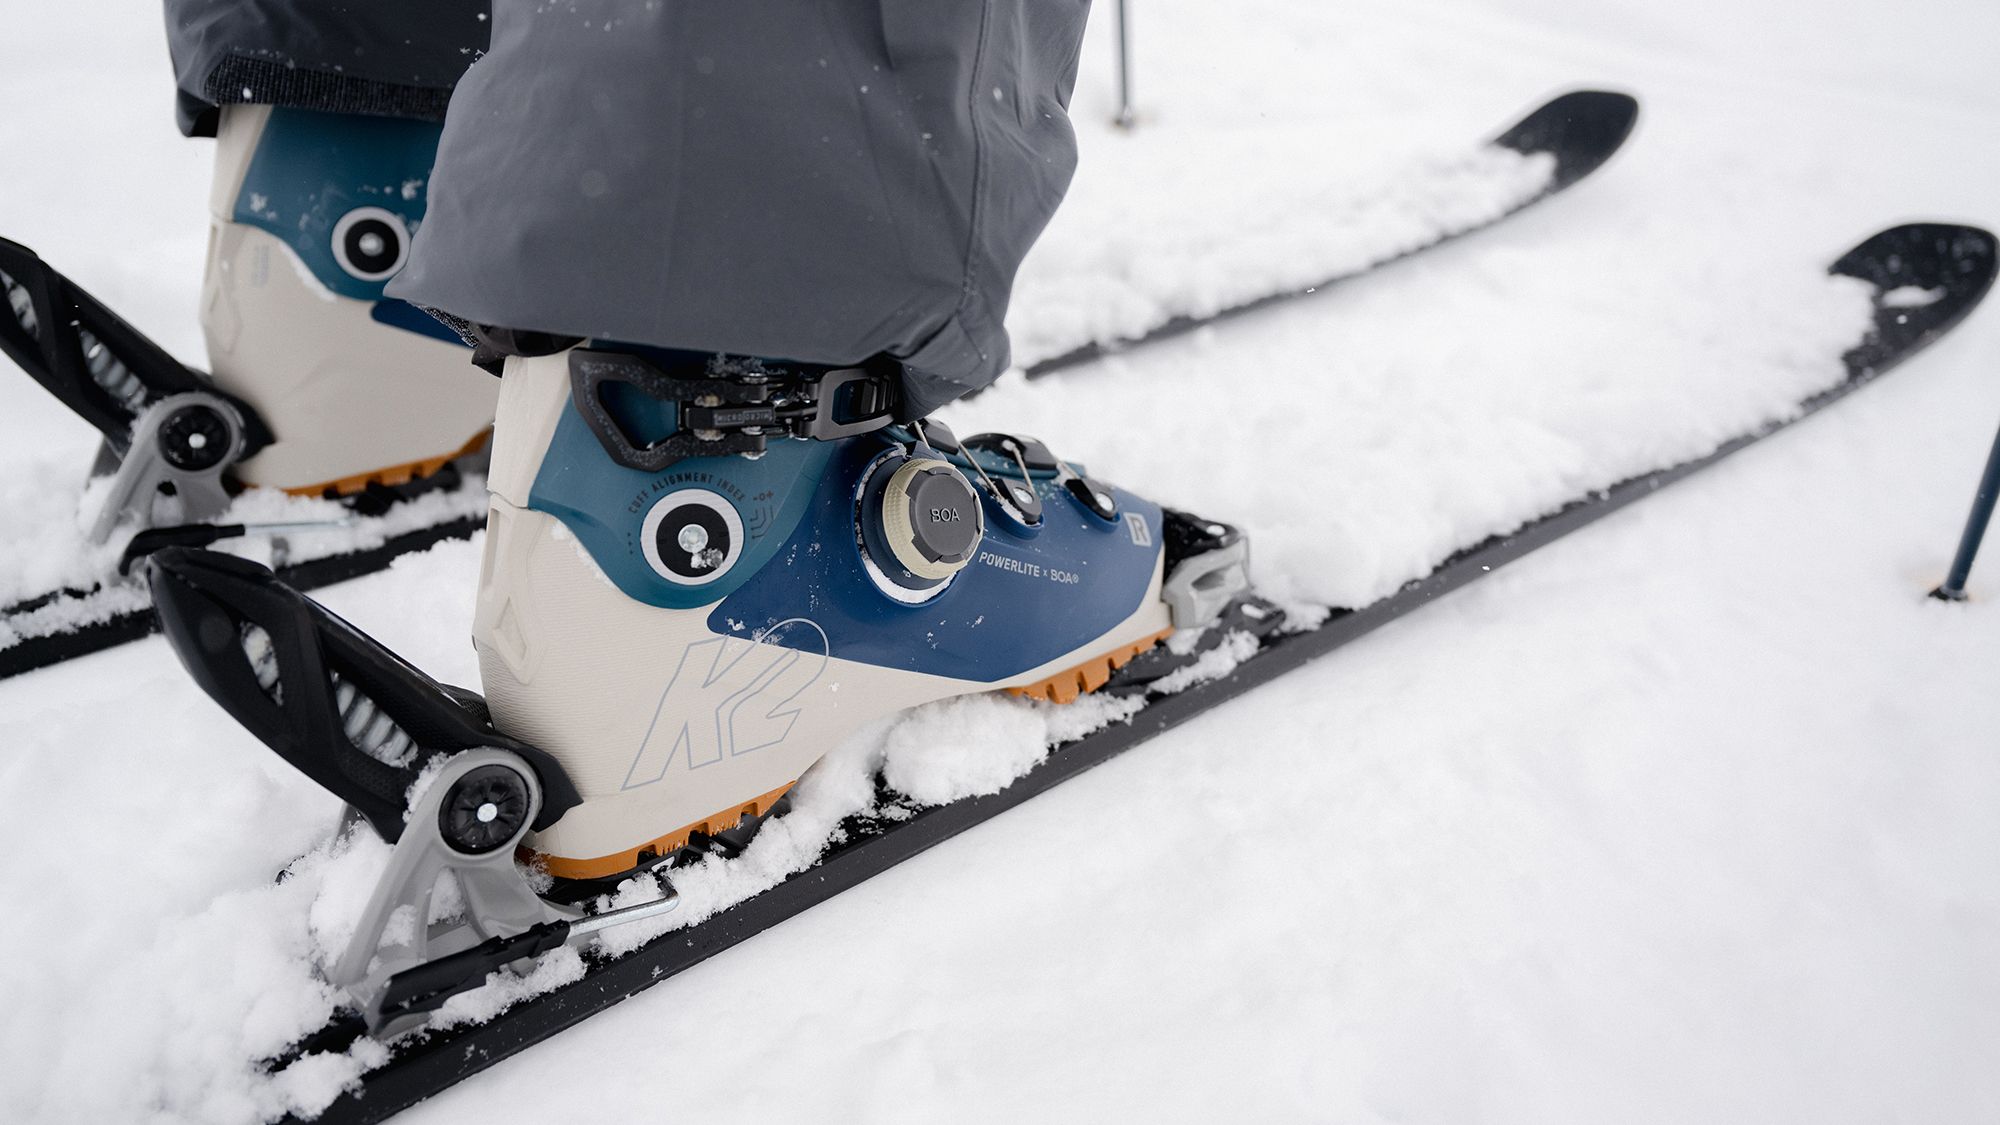 Slank geleidelijk Plateau K2 heeft primeur met BOA op skischoen - Wintersport weblog